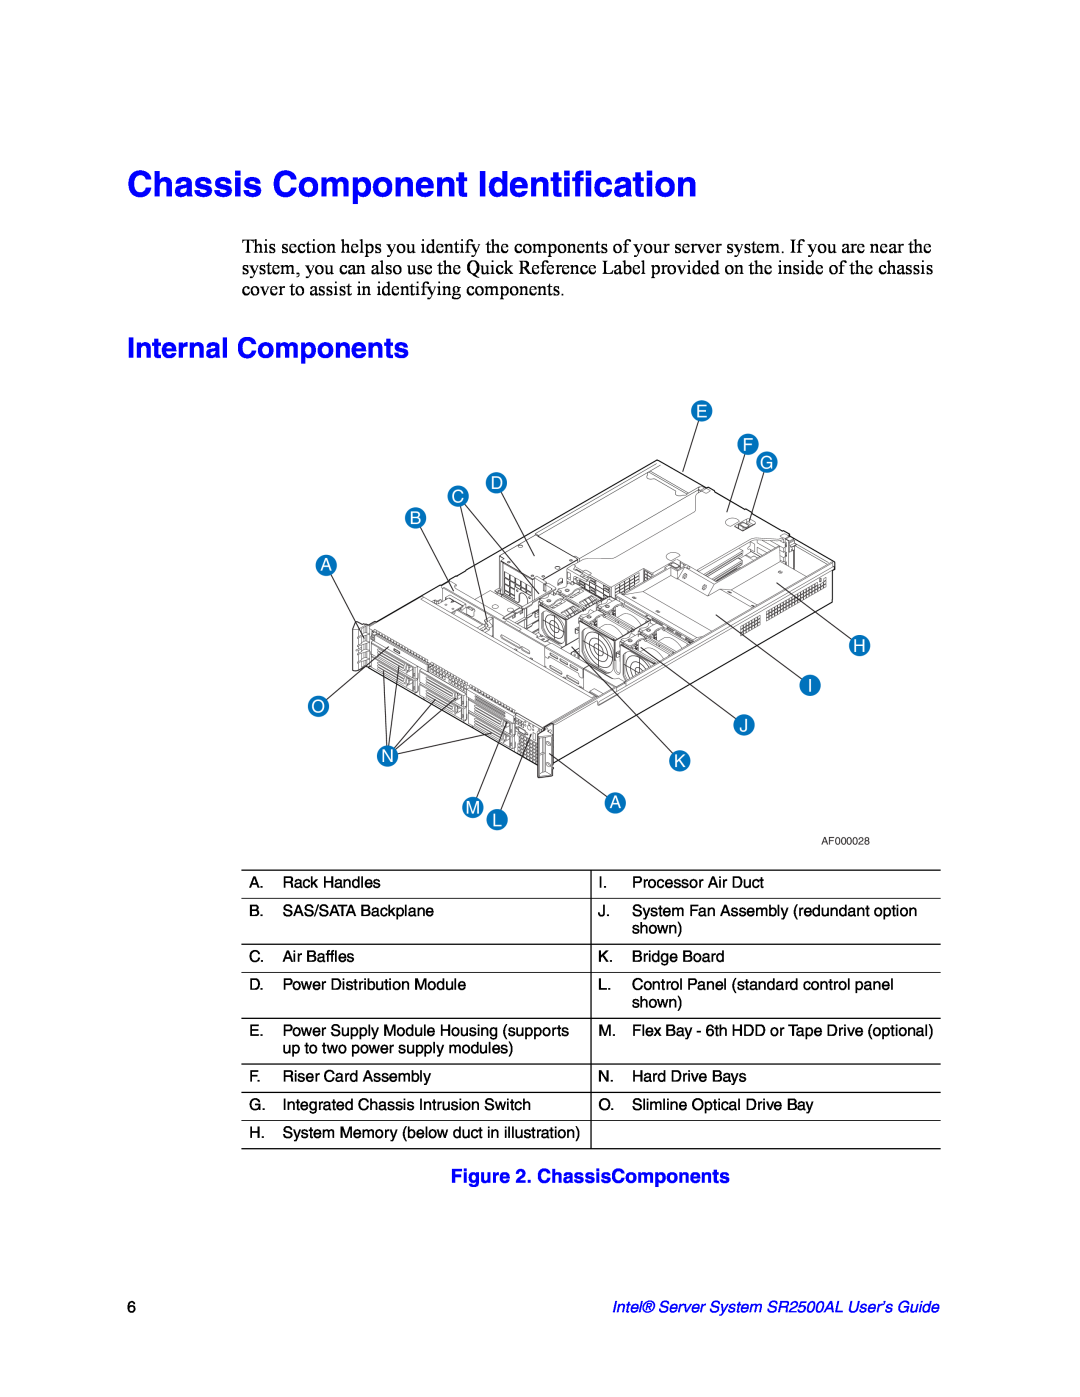 Intel SR2500AL manual Chassis Component Identification, Internal Components, ChassisComponents, M L 